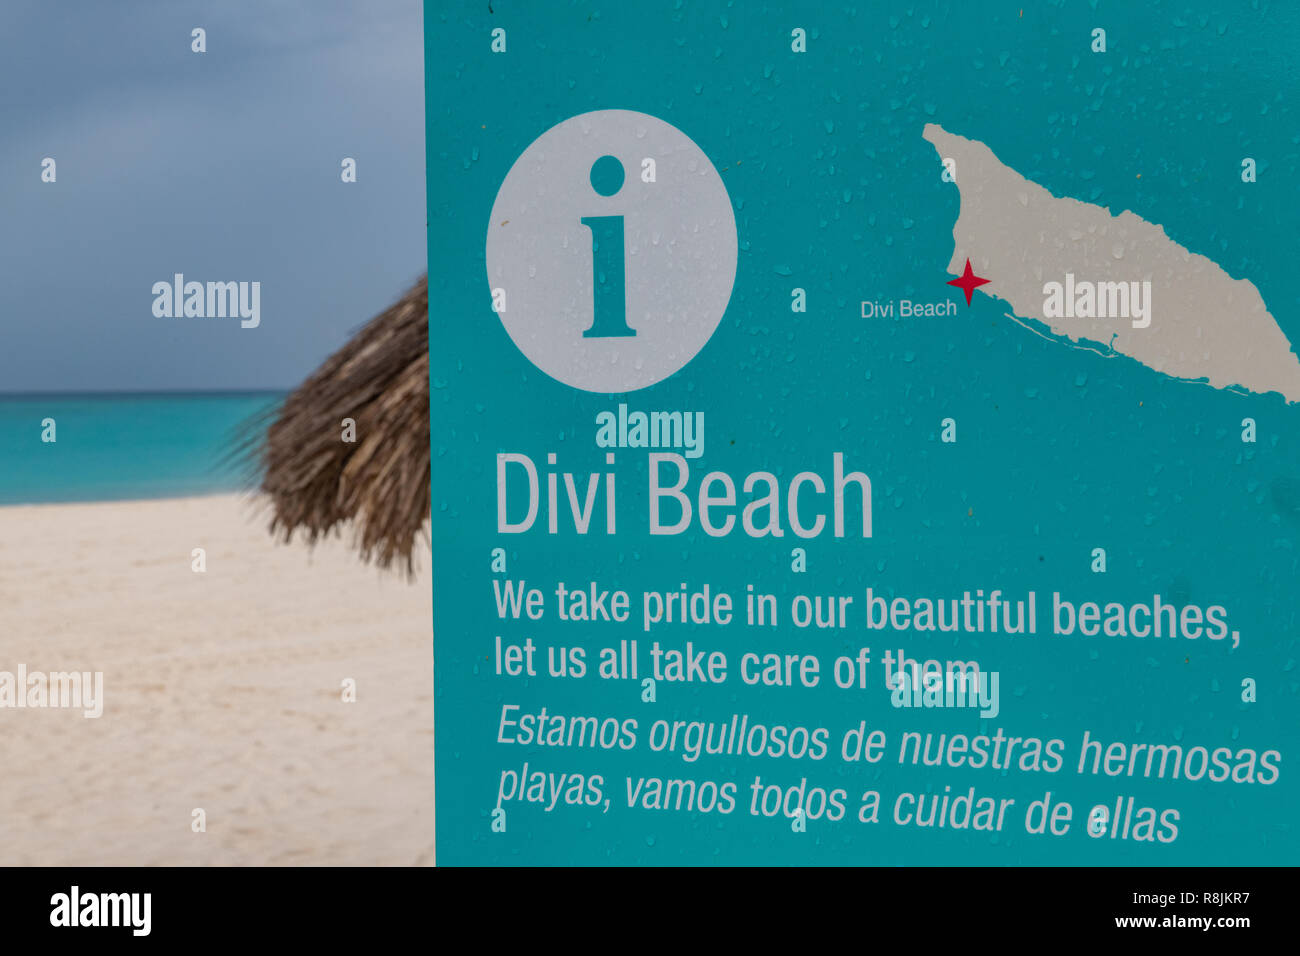 Divi Beach Aruba segno con pioggia nuvole - acquamarina teal e acque turchesi e la spiaggia di sabbia bianca in background Foto Stock